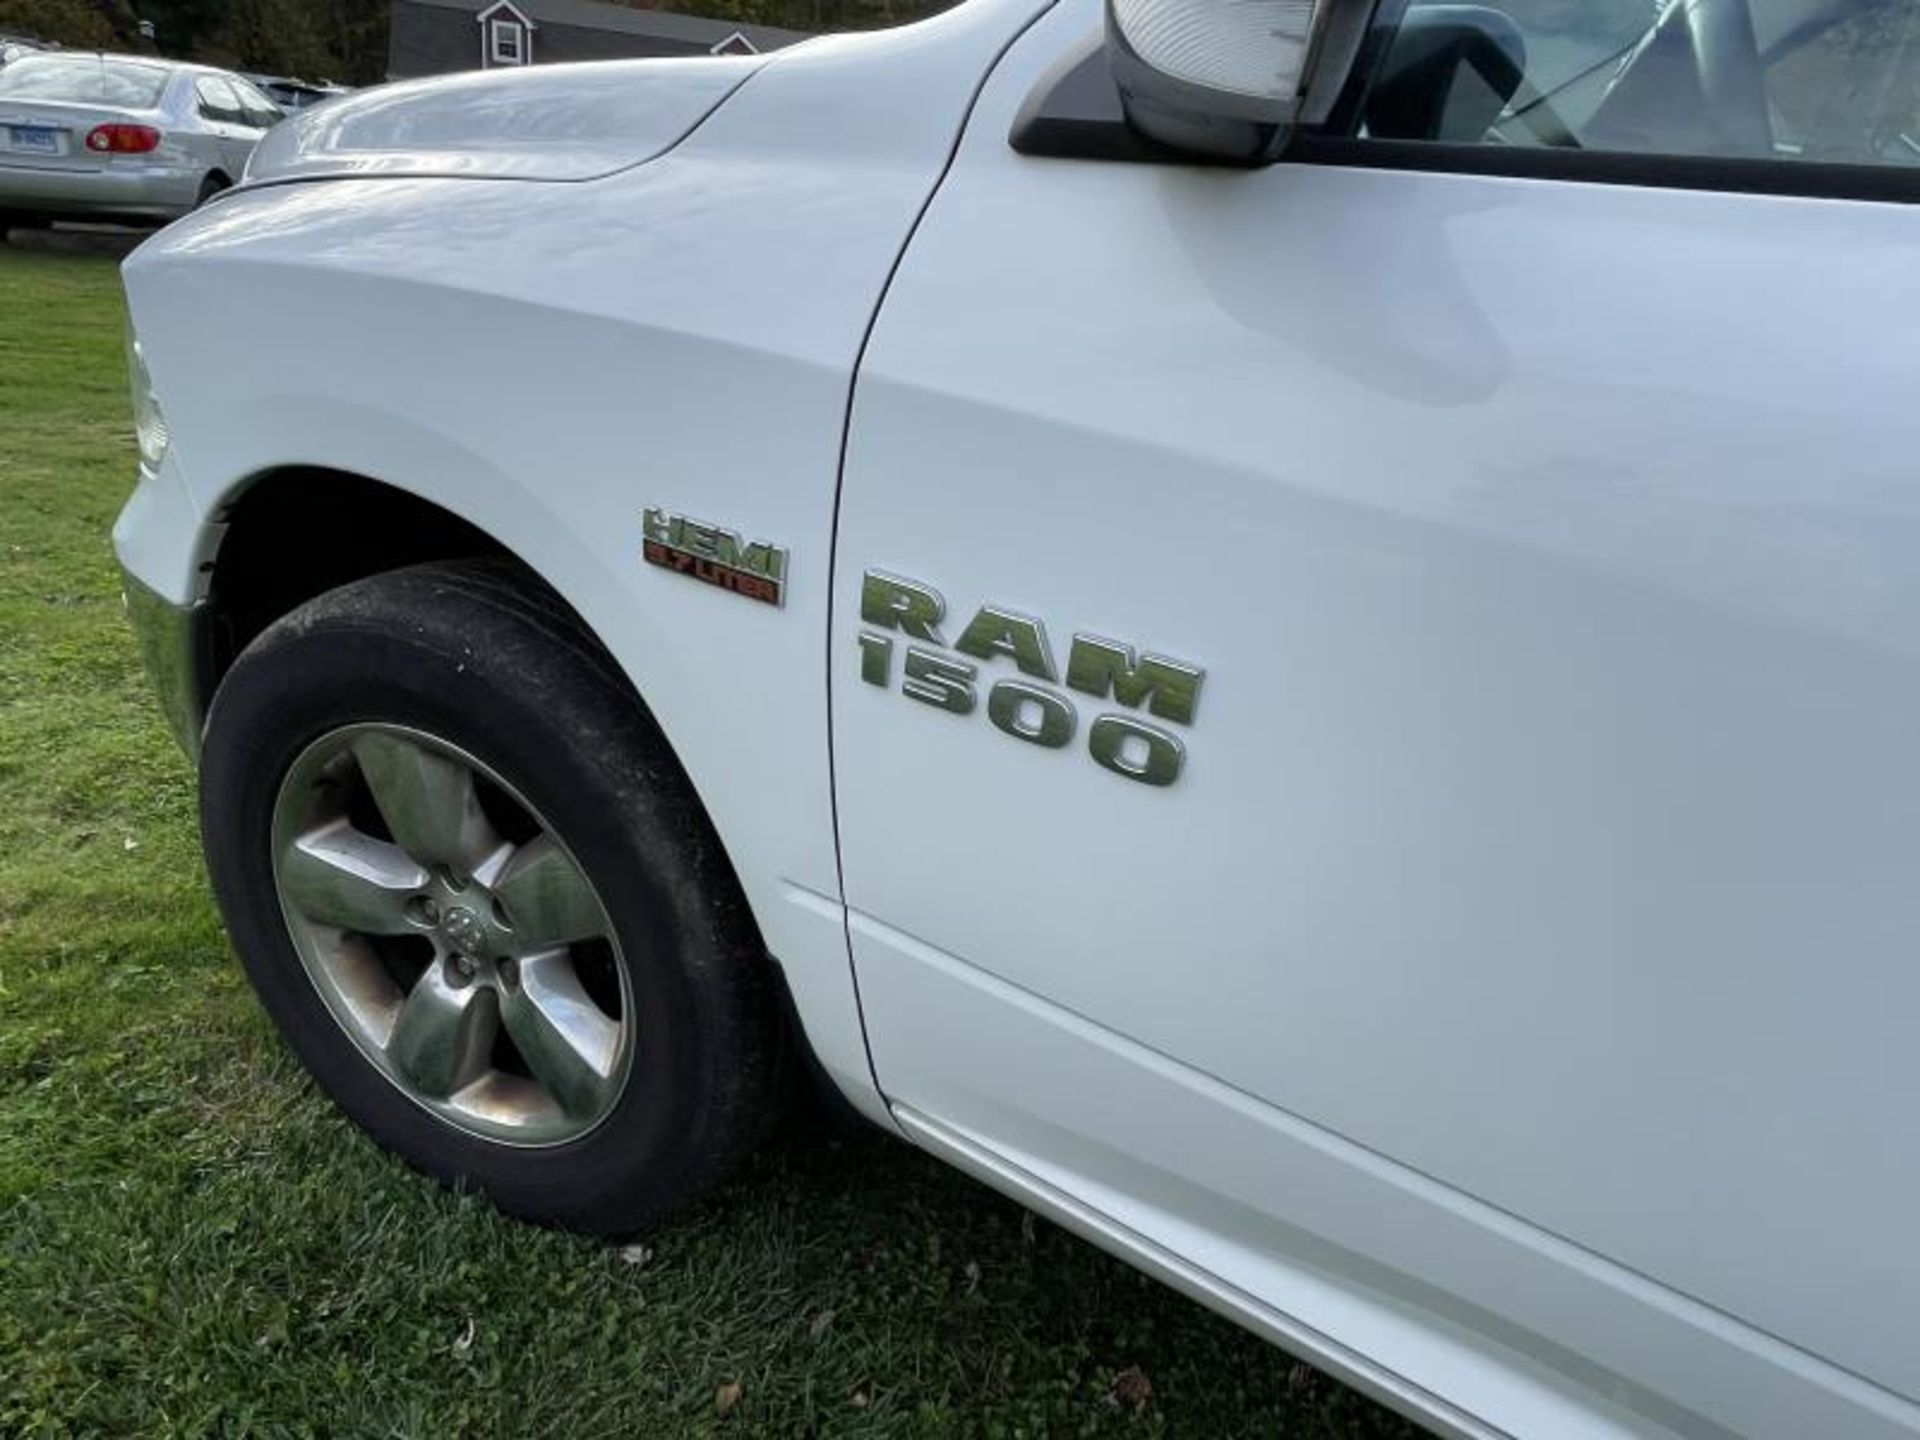 2016 Dodge Ram 1500 Hemi 5.7 Liter 4-Door White T1 2016 Dodge Ram 1500 Hemi 5.7 Liter 4-Door White - Image 18 of 33